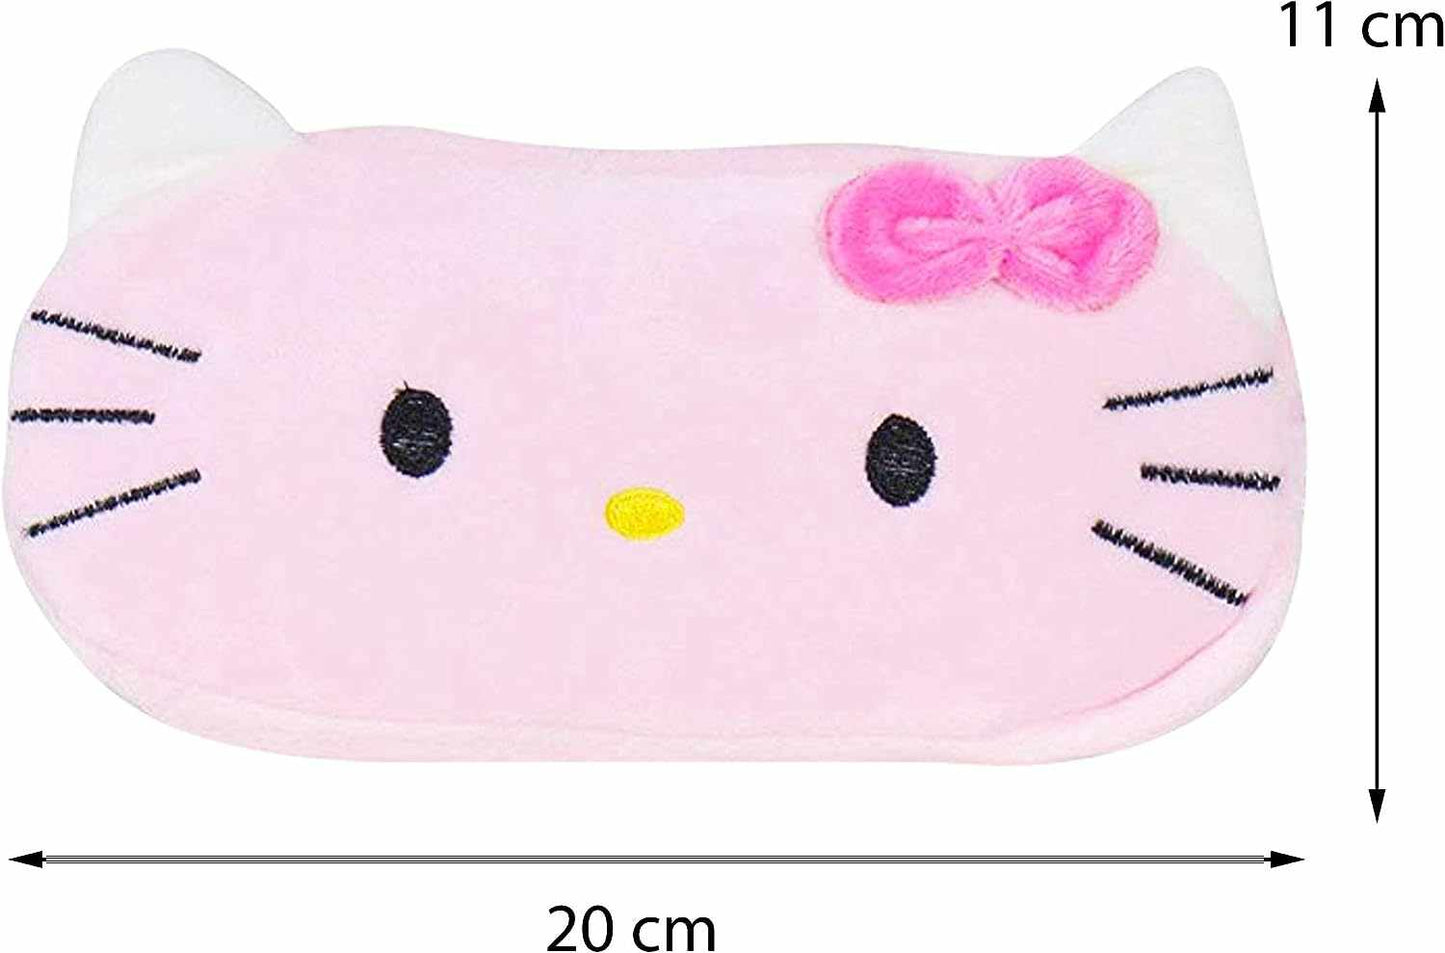 Hello Kitty Plush Pocket